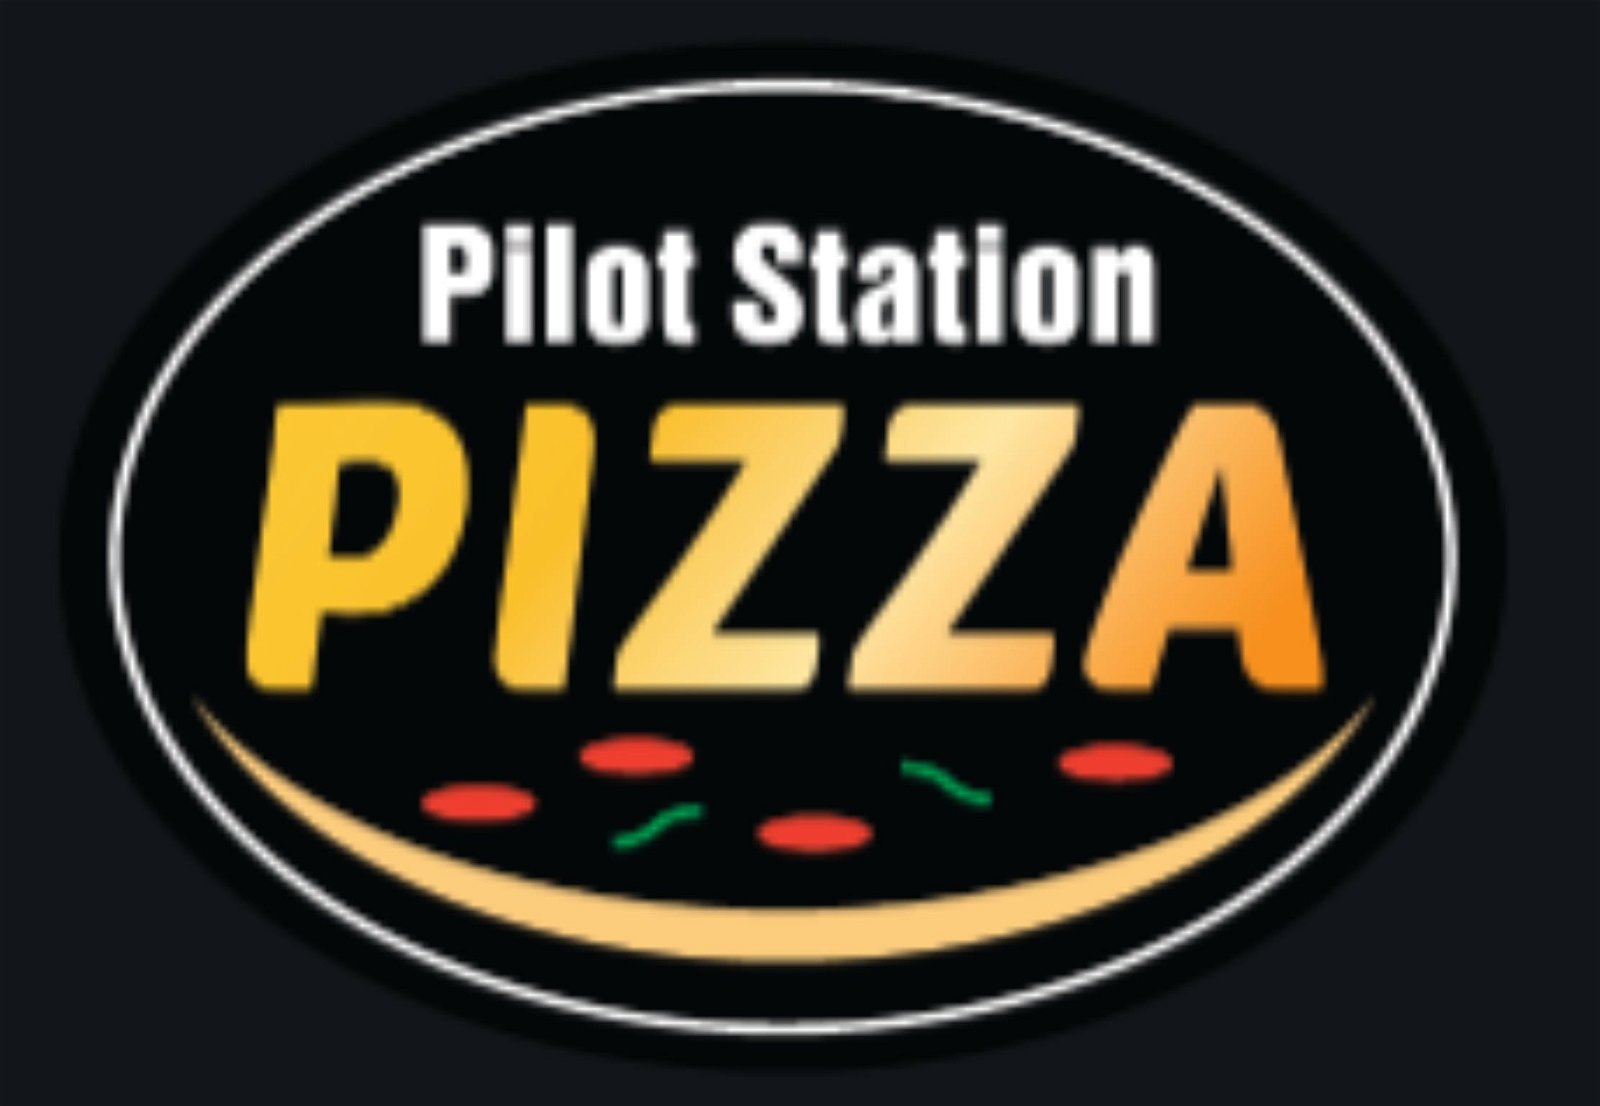 Pilot Station Pizza - Surfers Paradise Gold Coast